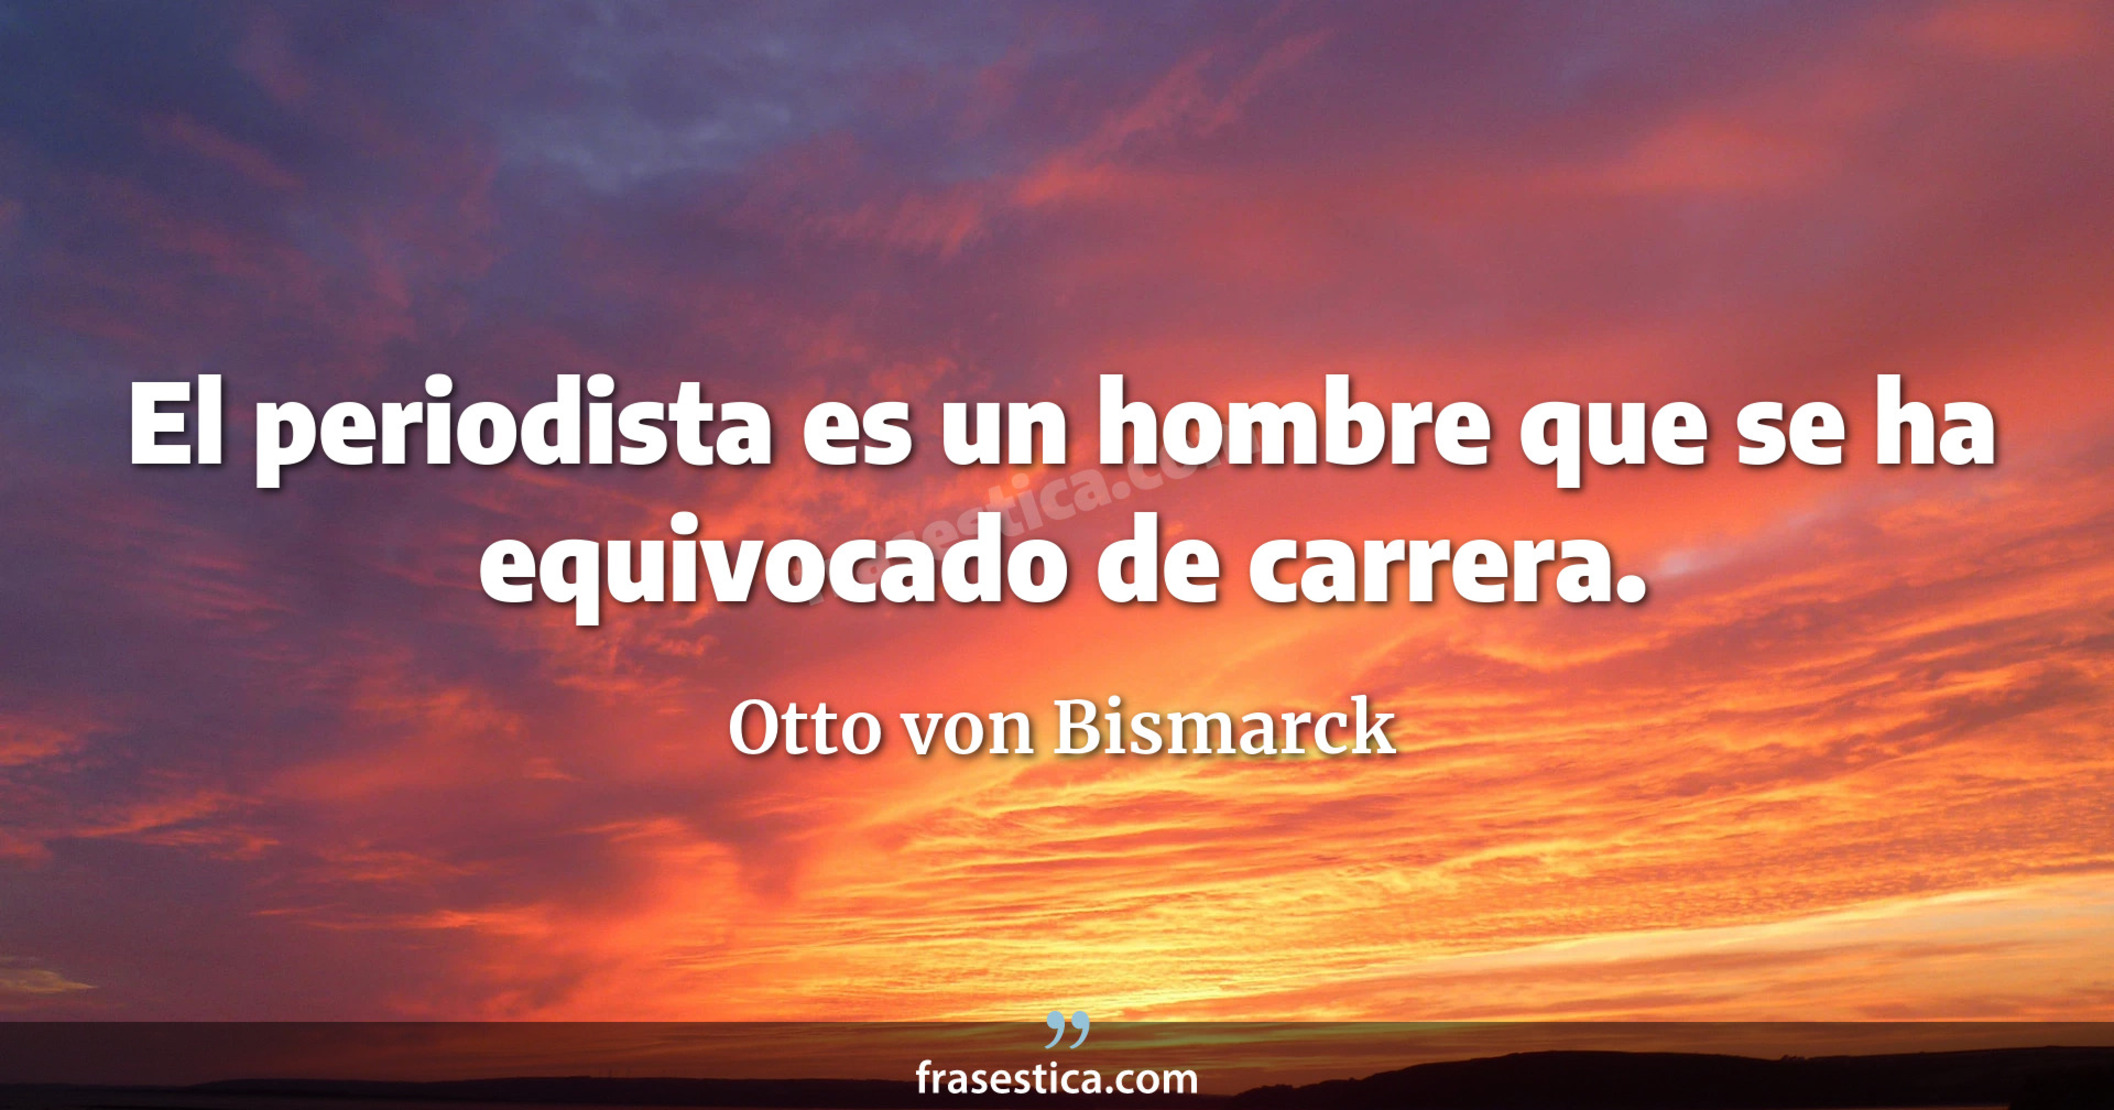 El periodista es un hombre que se ha equivocado de carrera. - Otto von Bismarck